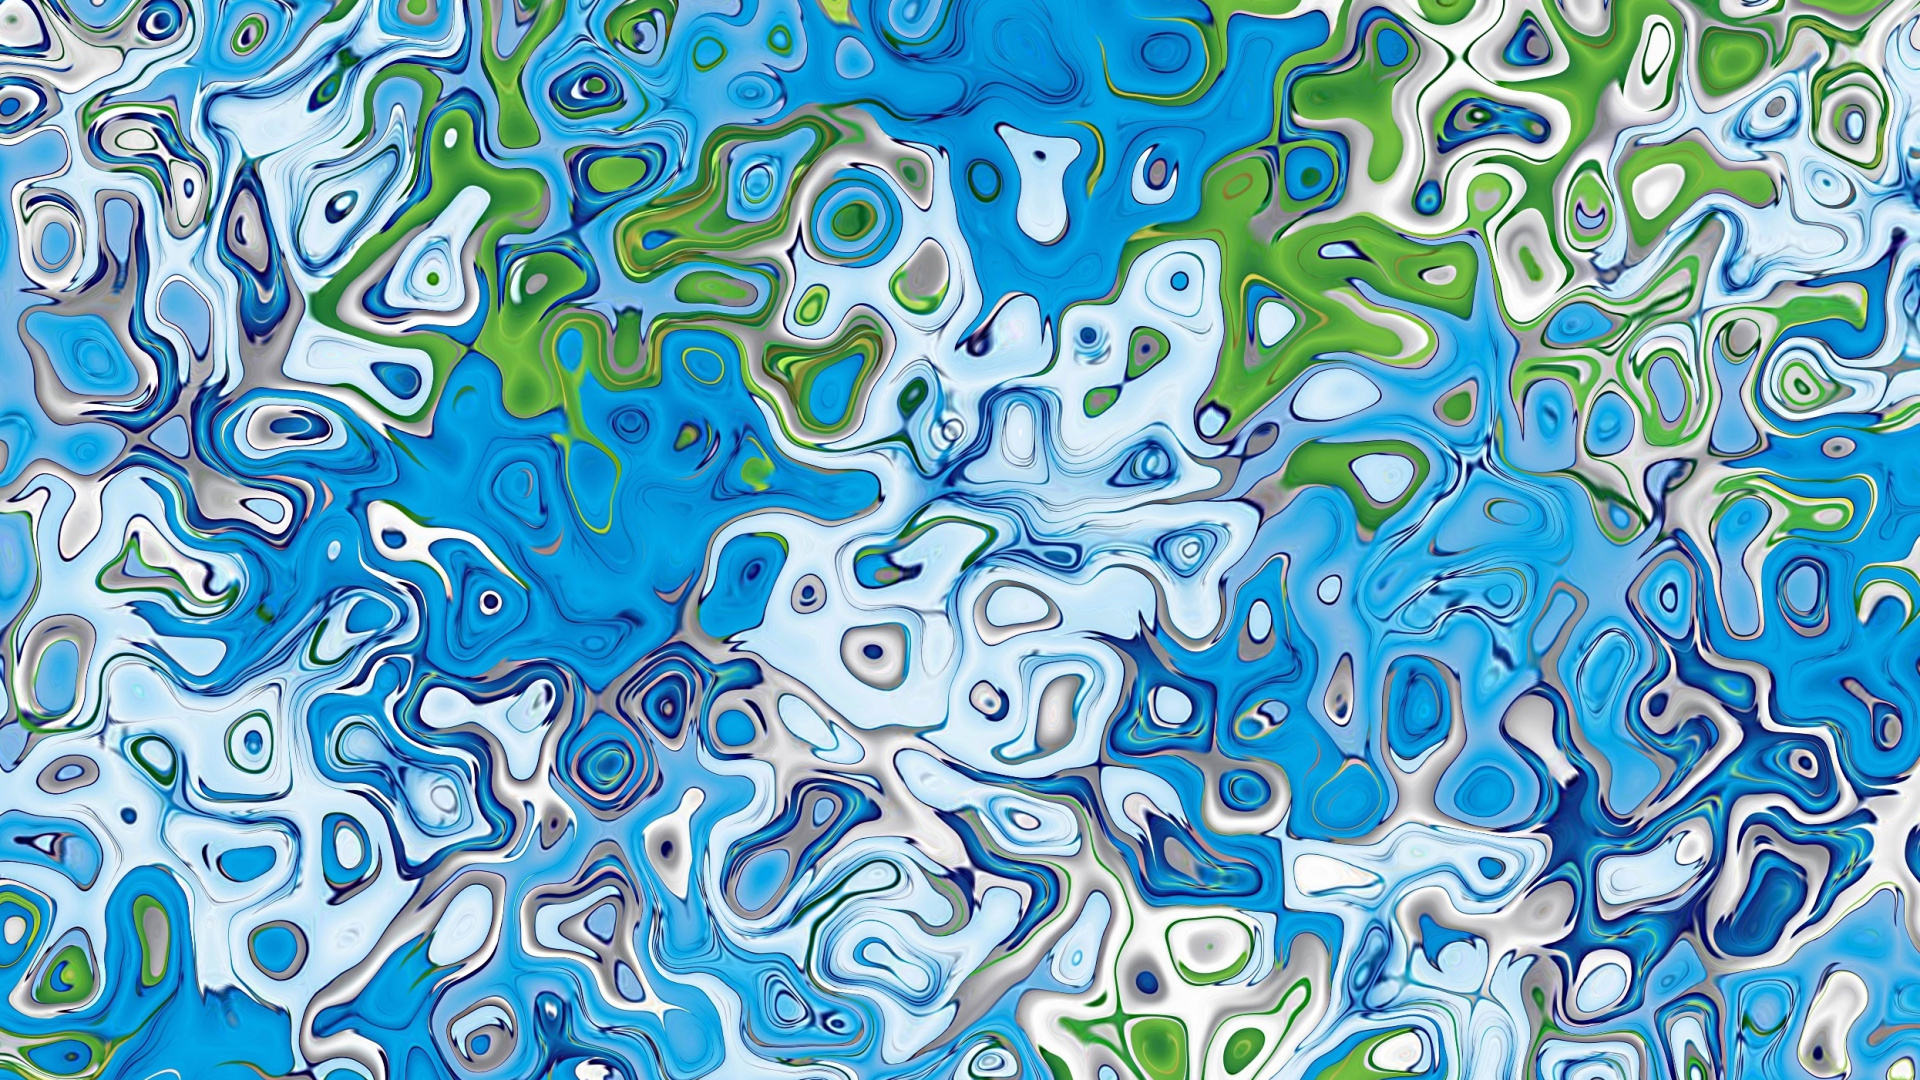 Pintura Abstracta Verde Azul y Blanca. Wallpaper in 1920x1080 Resolution